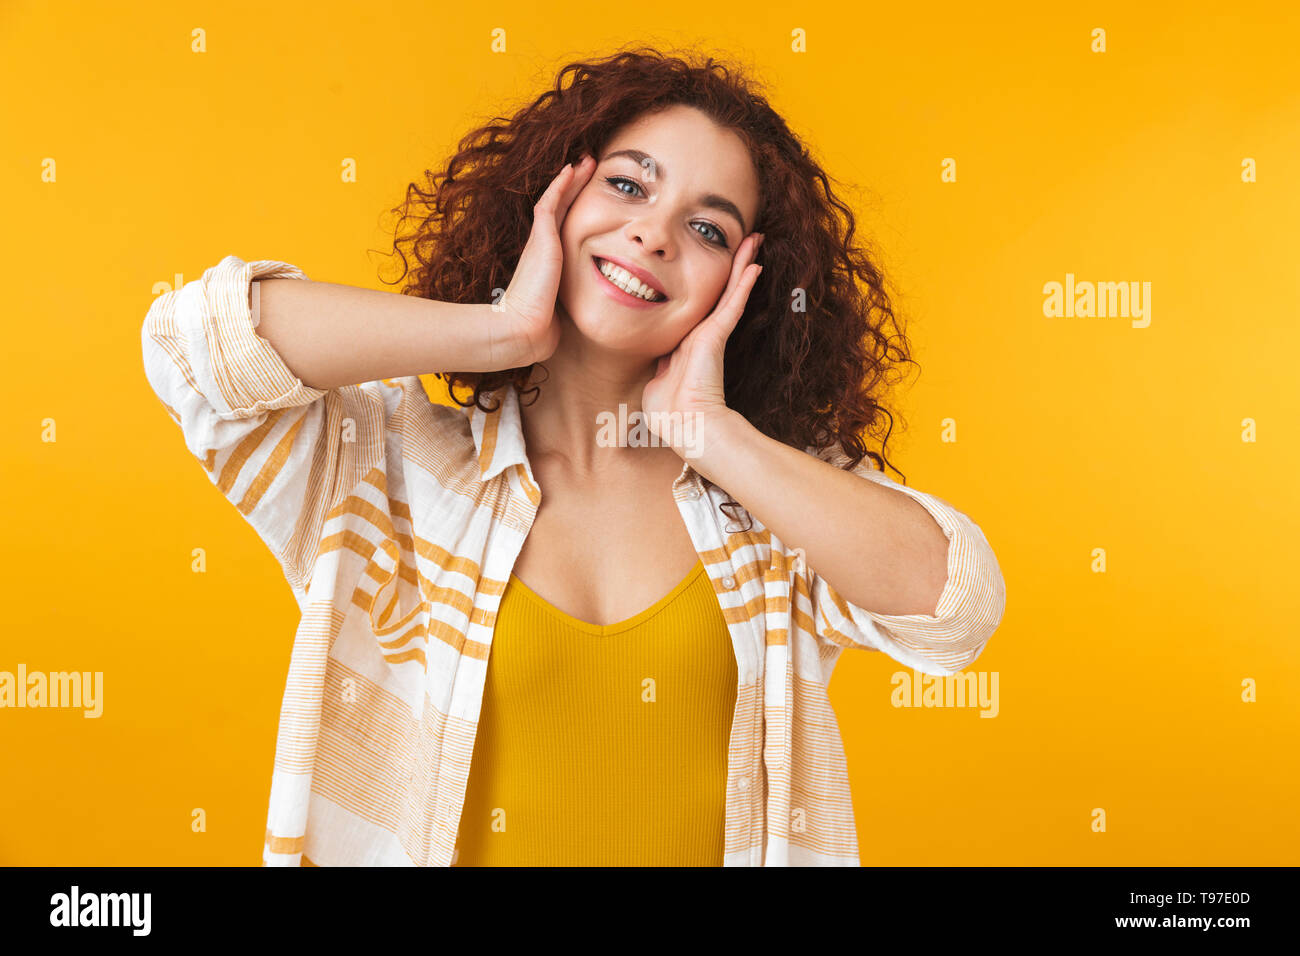 Image de belle femme 20s avec des cheveux bouclés standing and smiling, isolé sur fond jaune Banque D'Images